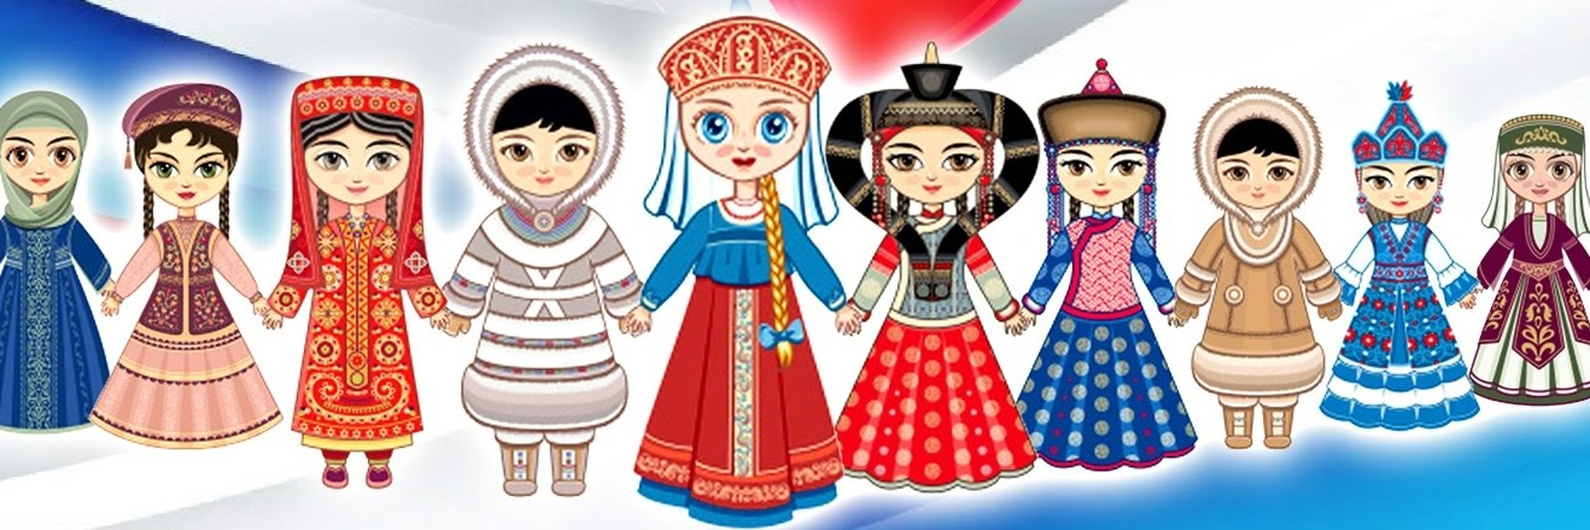 Куклы в национальных костюмах народов мира